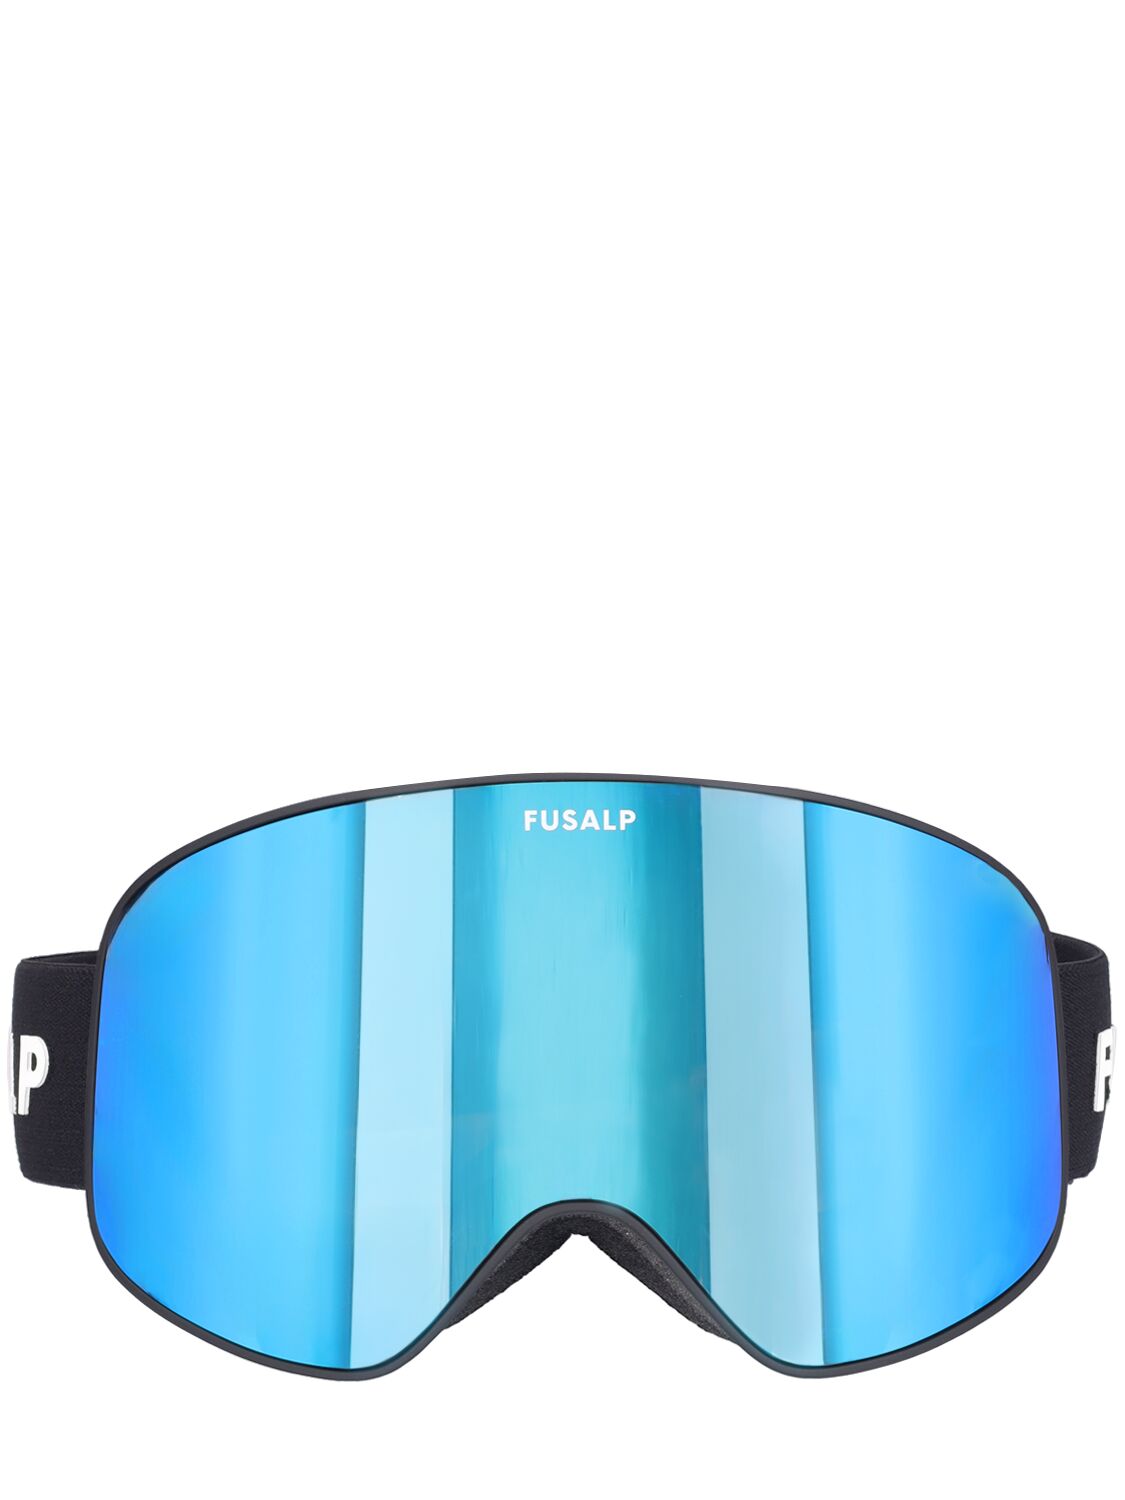 Fusalp Matterhorn Eyes Thin Frame Ski Goggles In Fuchsia